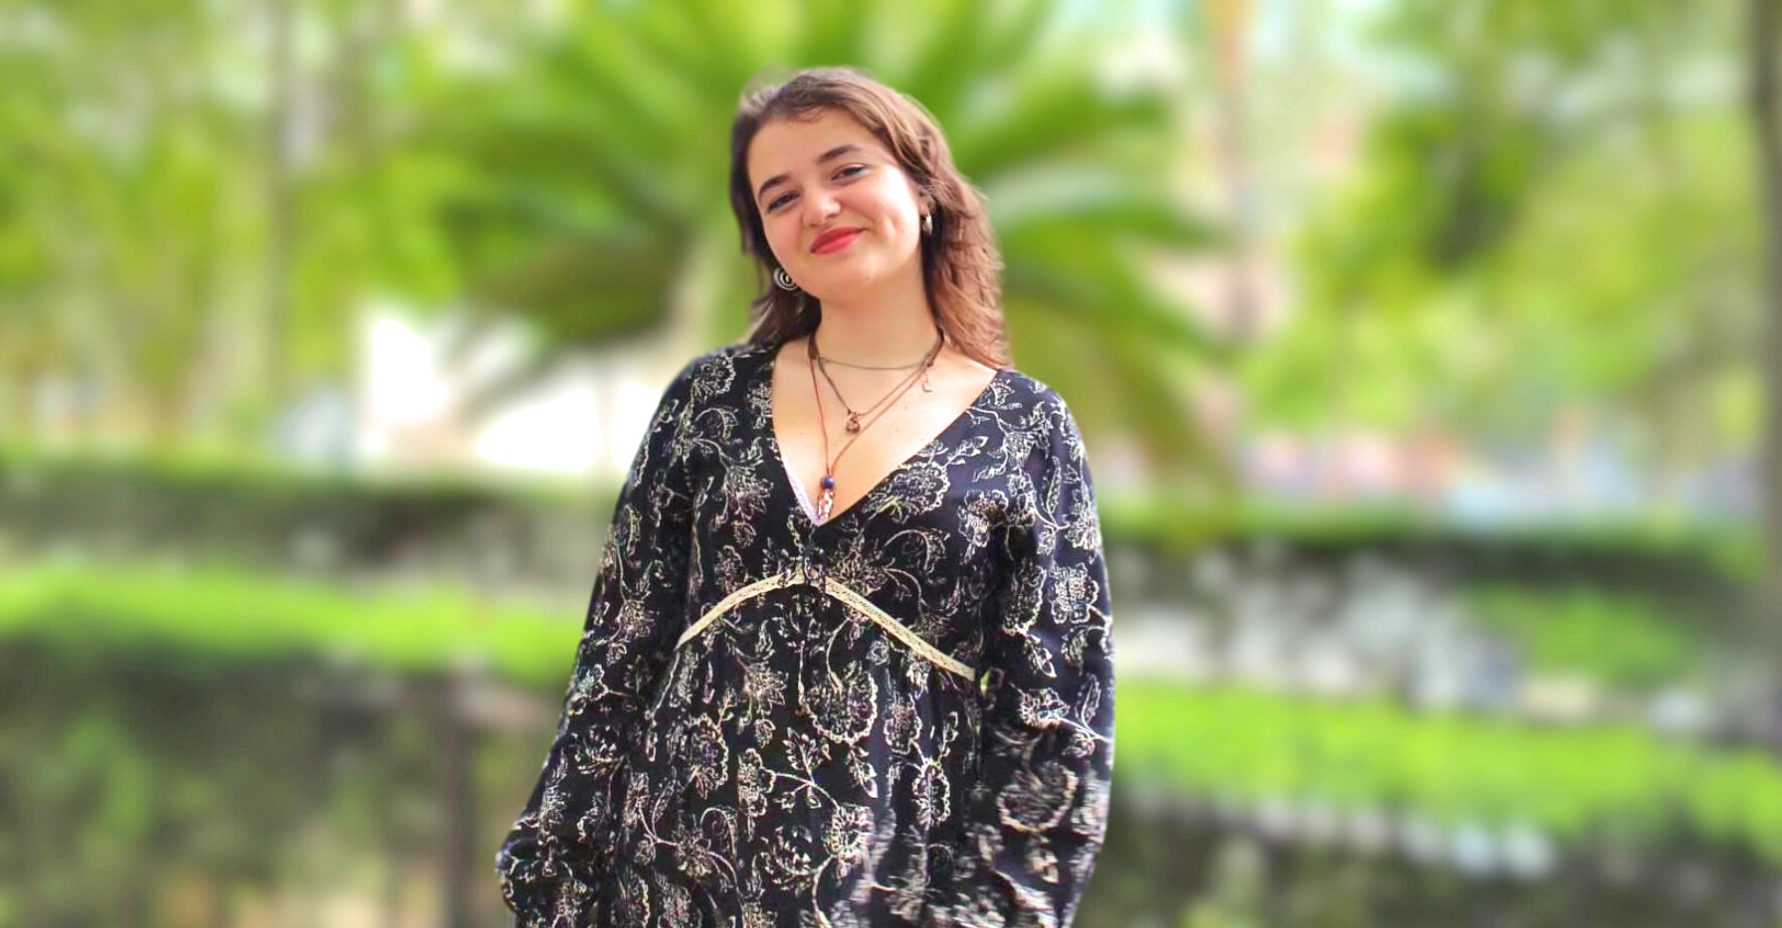 ProART Entrevista: Bruna Antunes - o universo artístico de uma jovem promessa